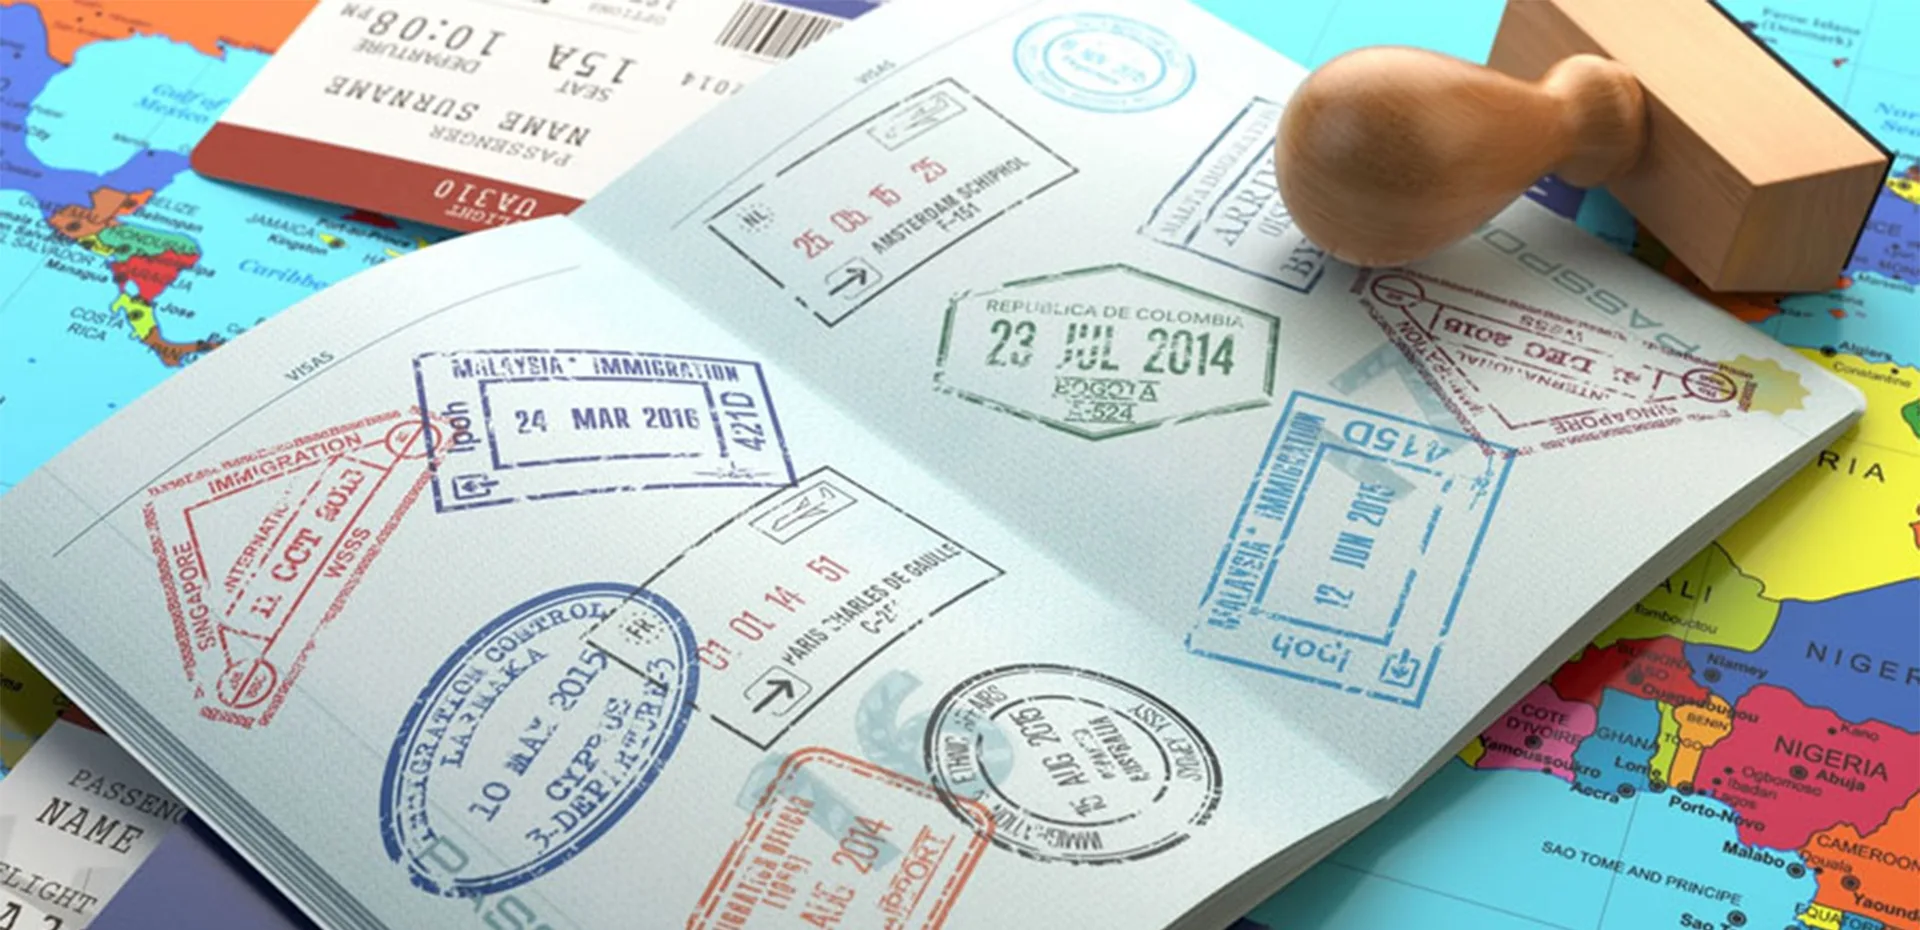 Background Image of Visa Information